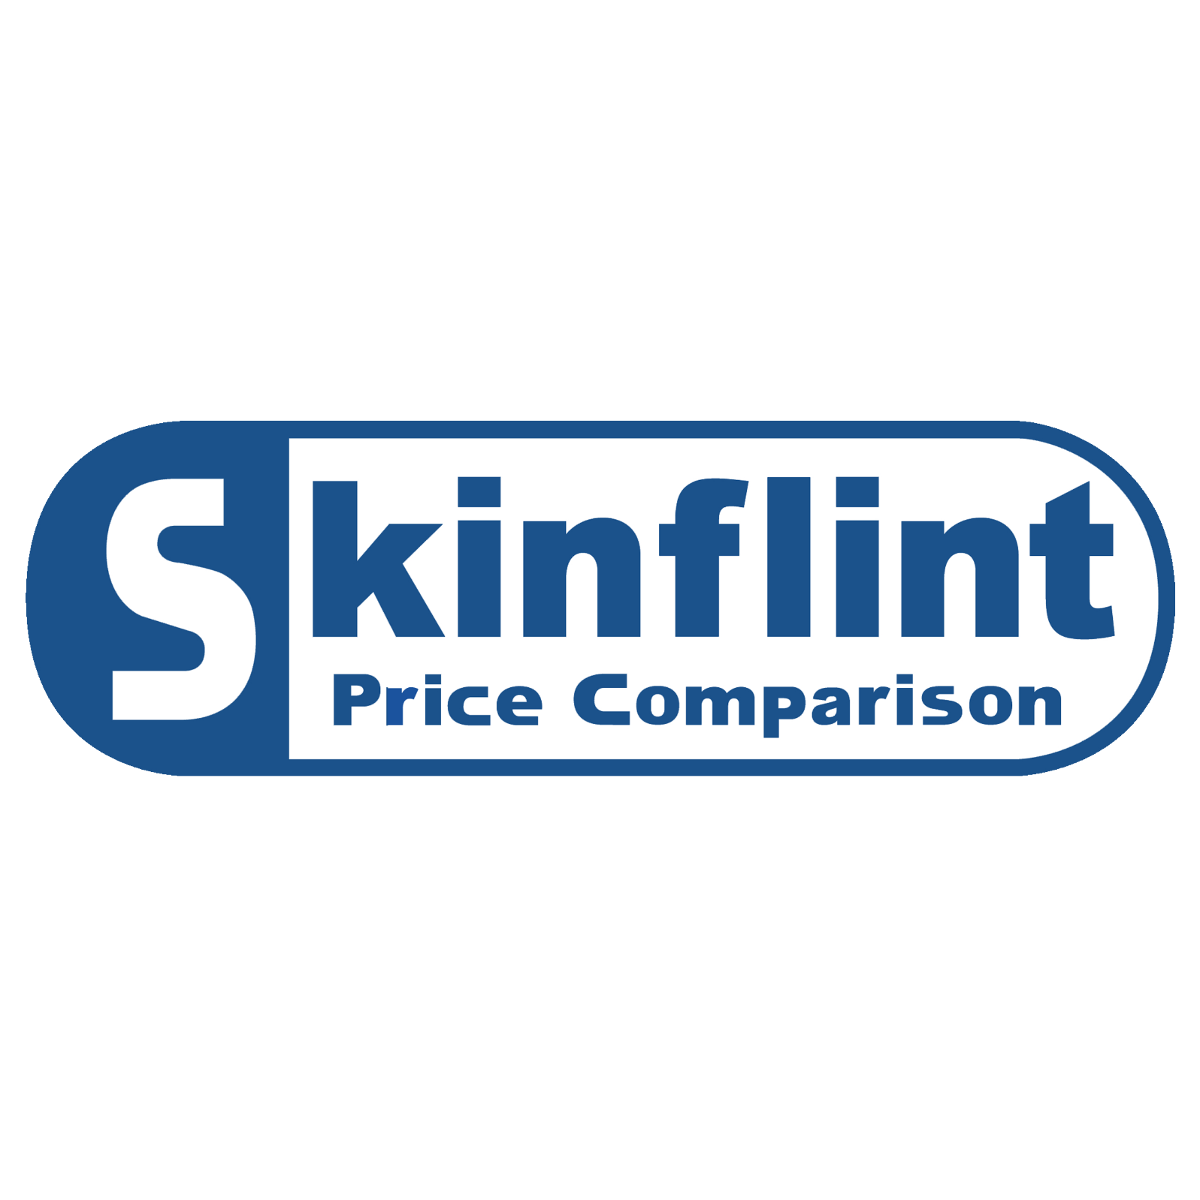 SKINFLINT/ogimage_skinflint.png